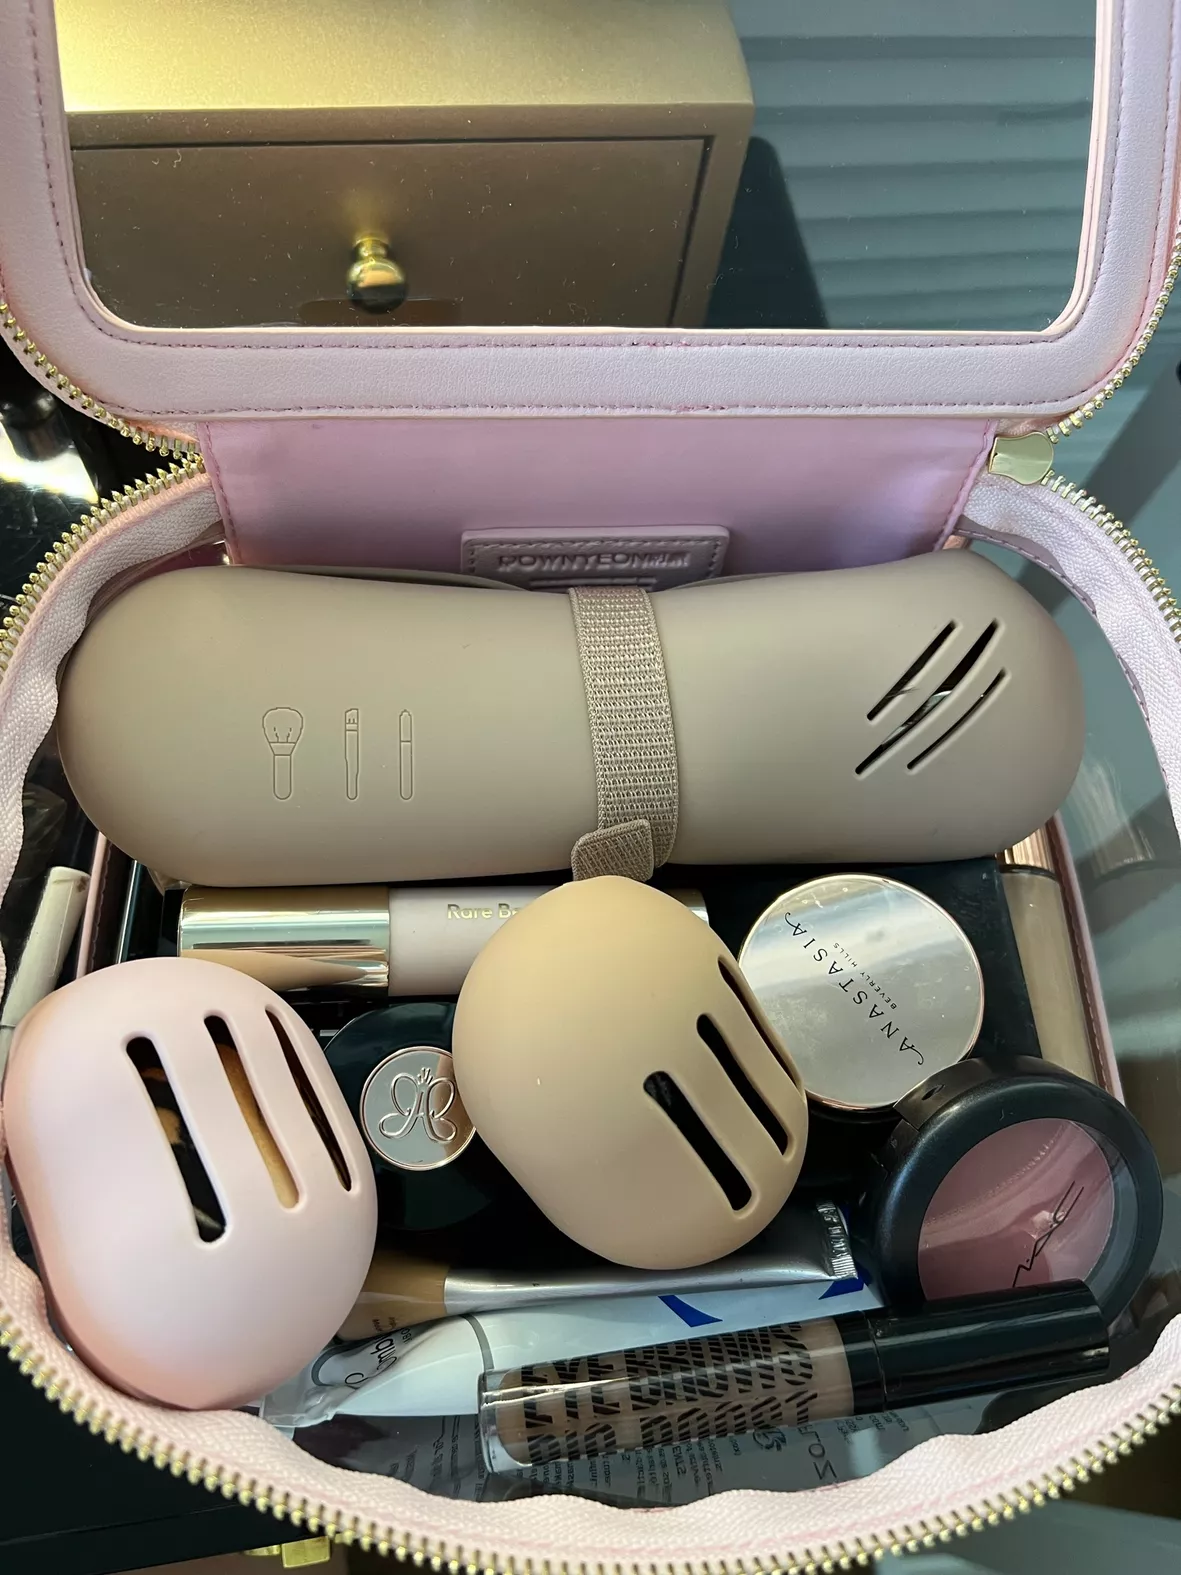 Travel Makeup Brush Holder,Make Up … curated on LTK